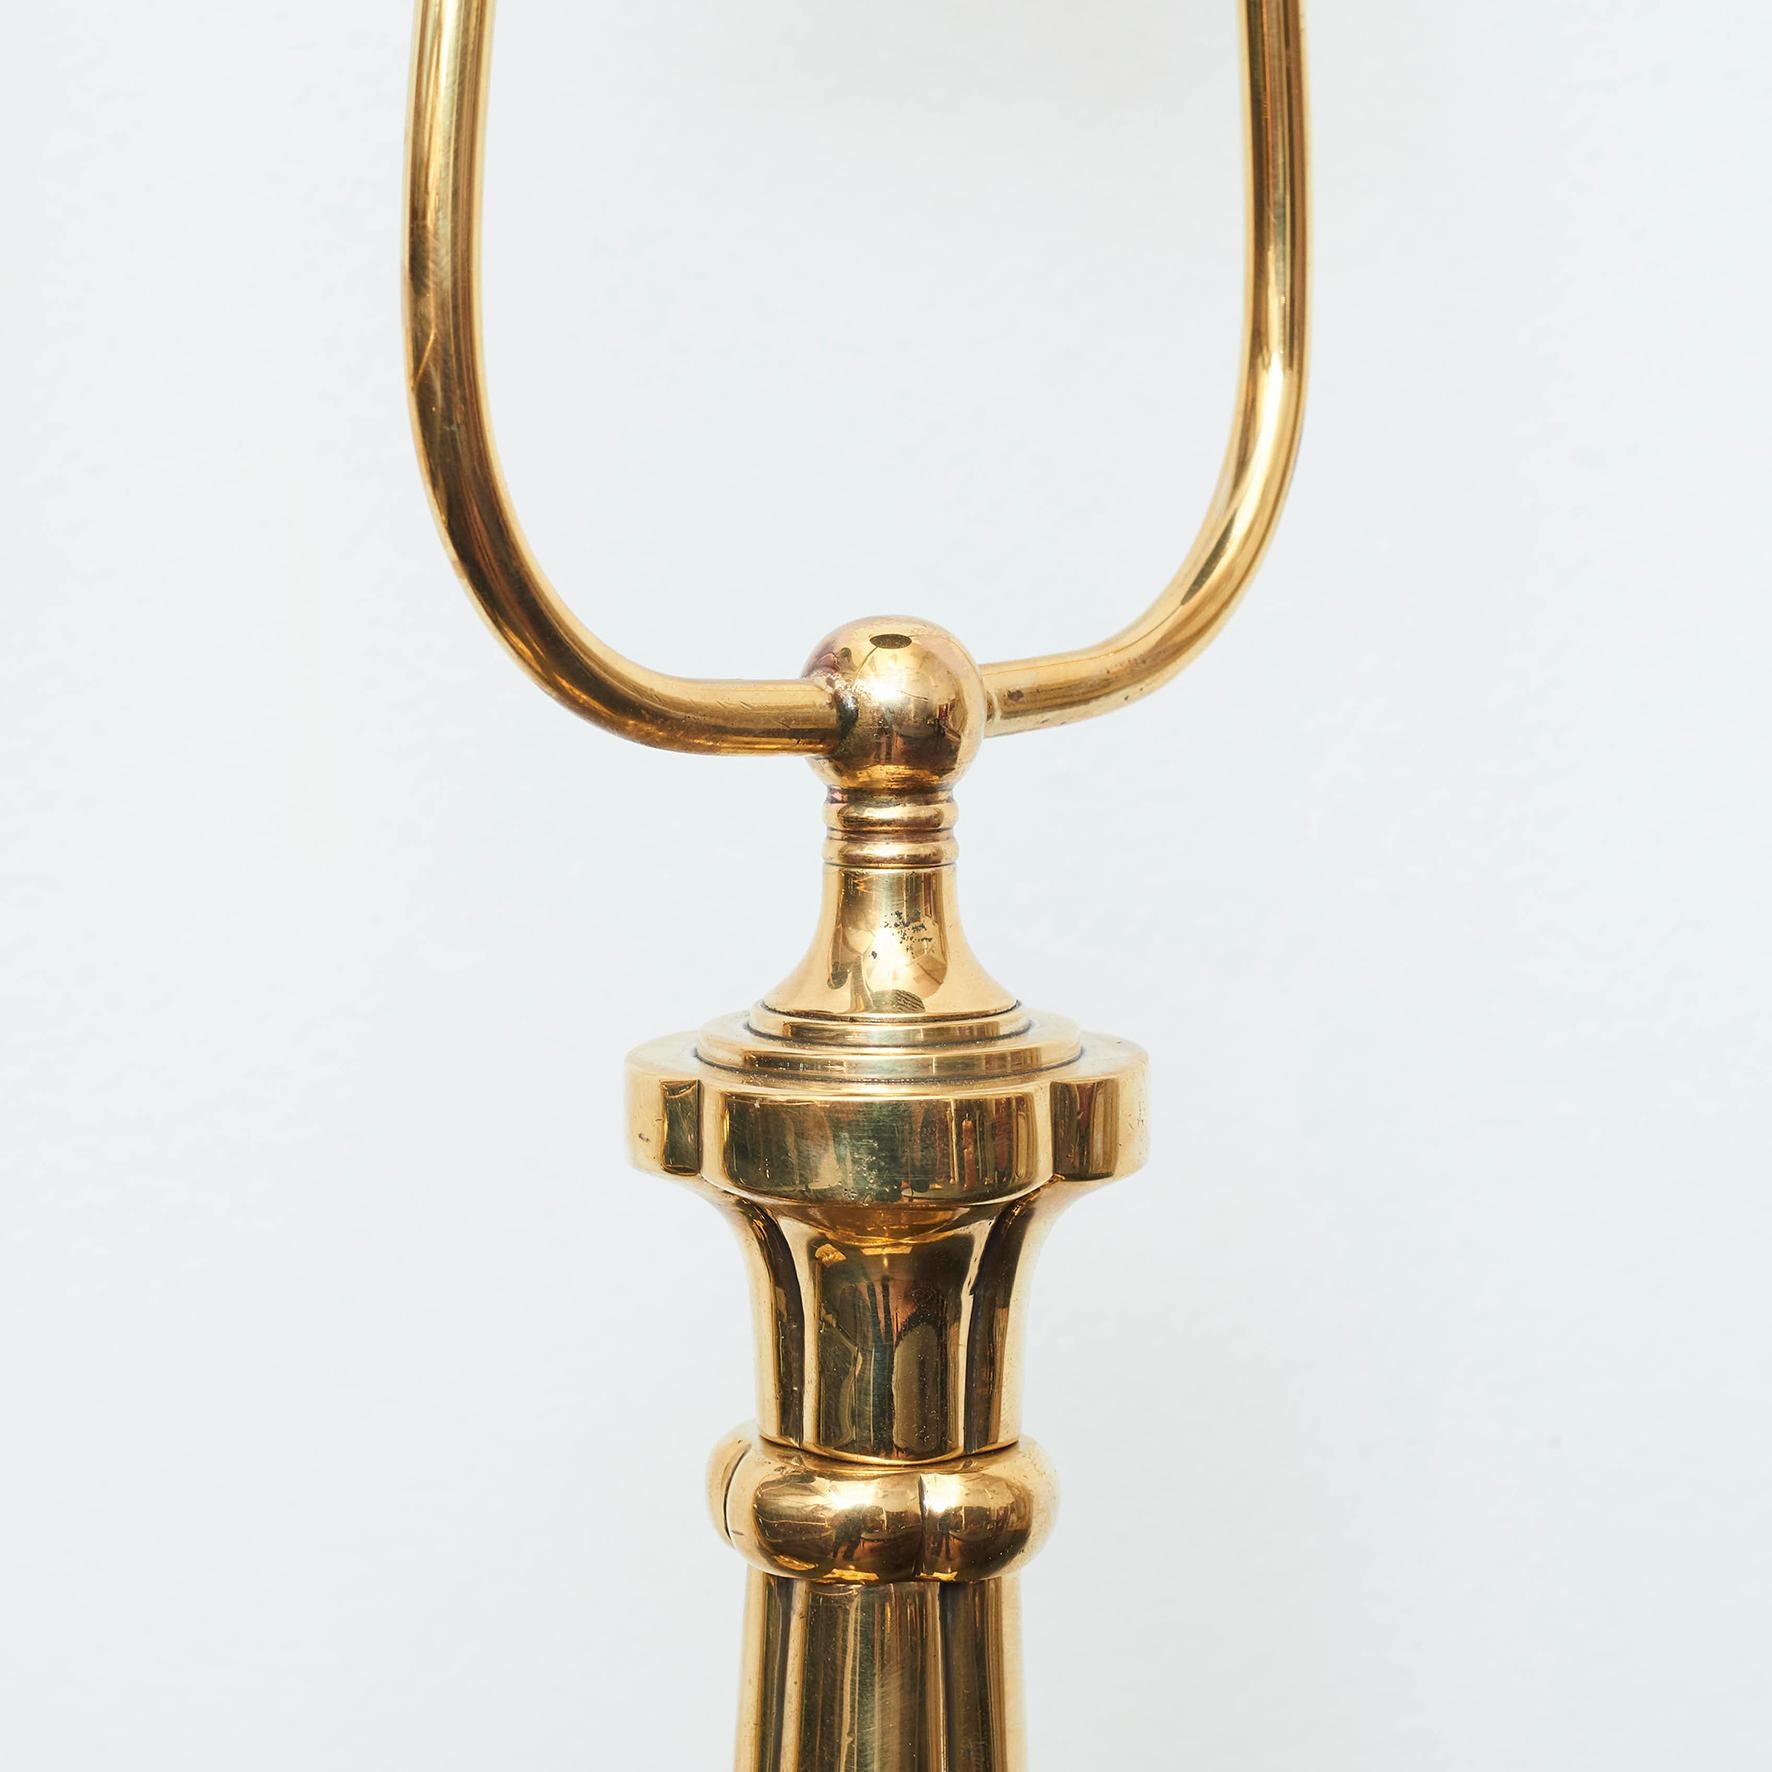 Pair of Danish Art Nouveau Brass Table Lamps (Art nouveau)